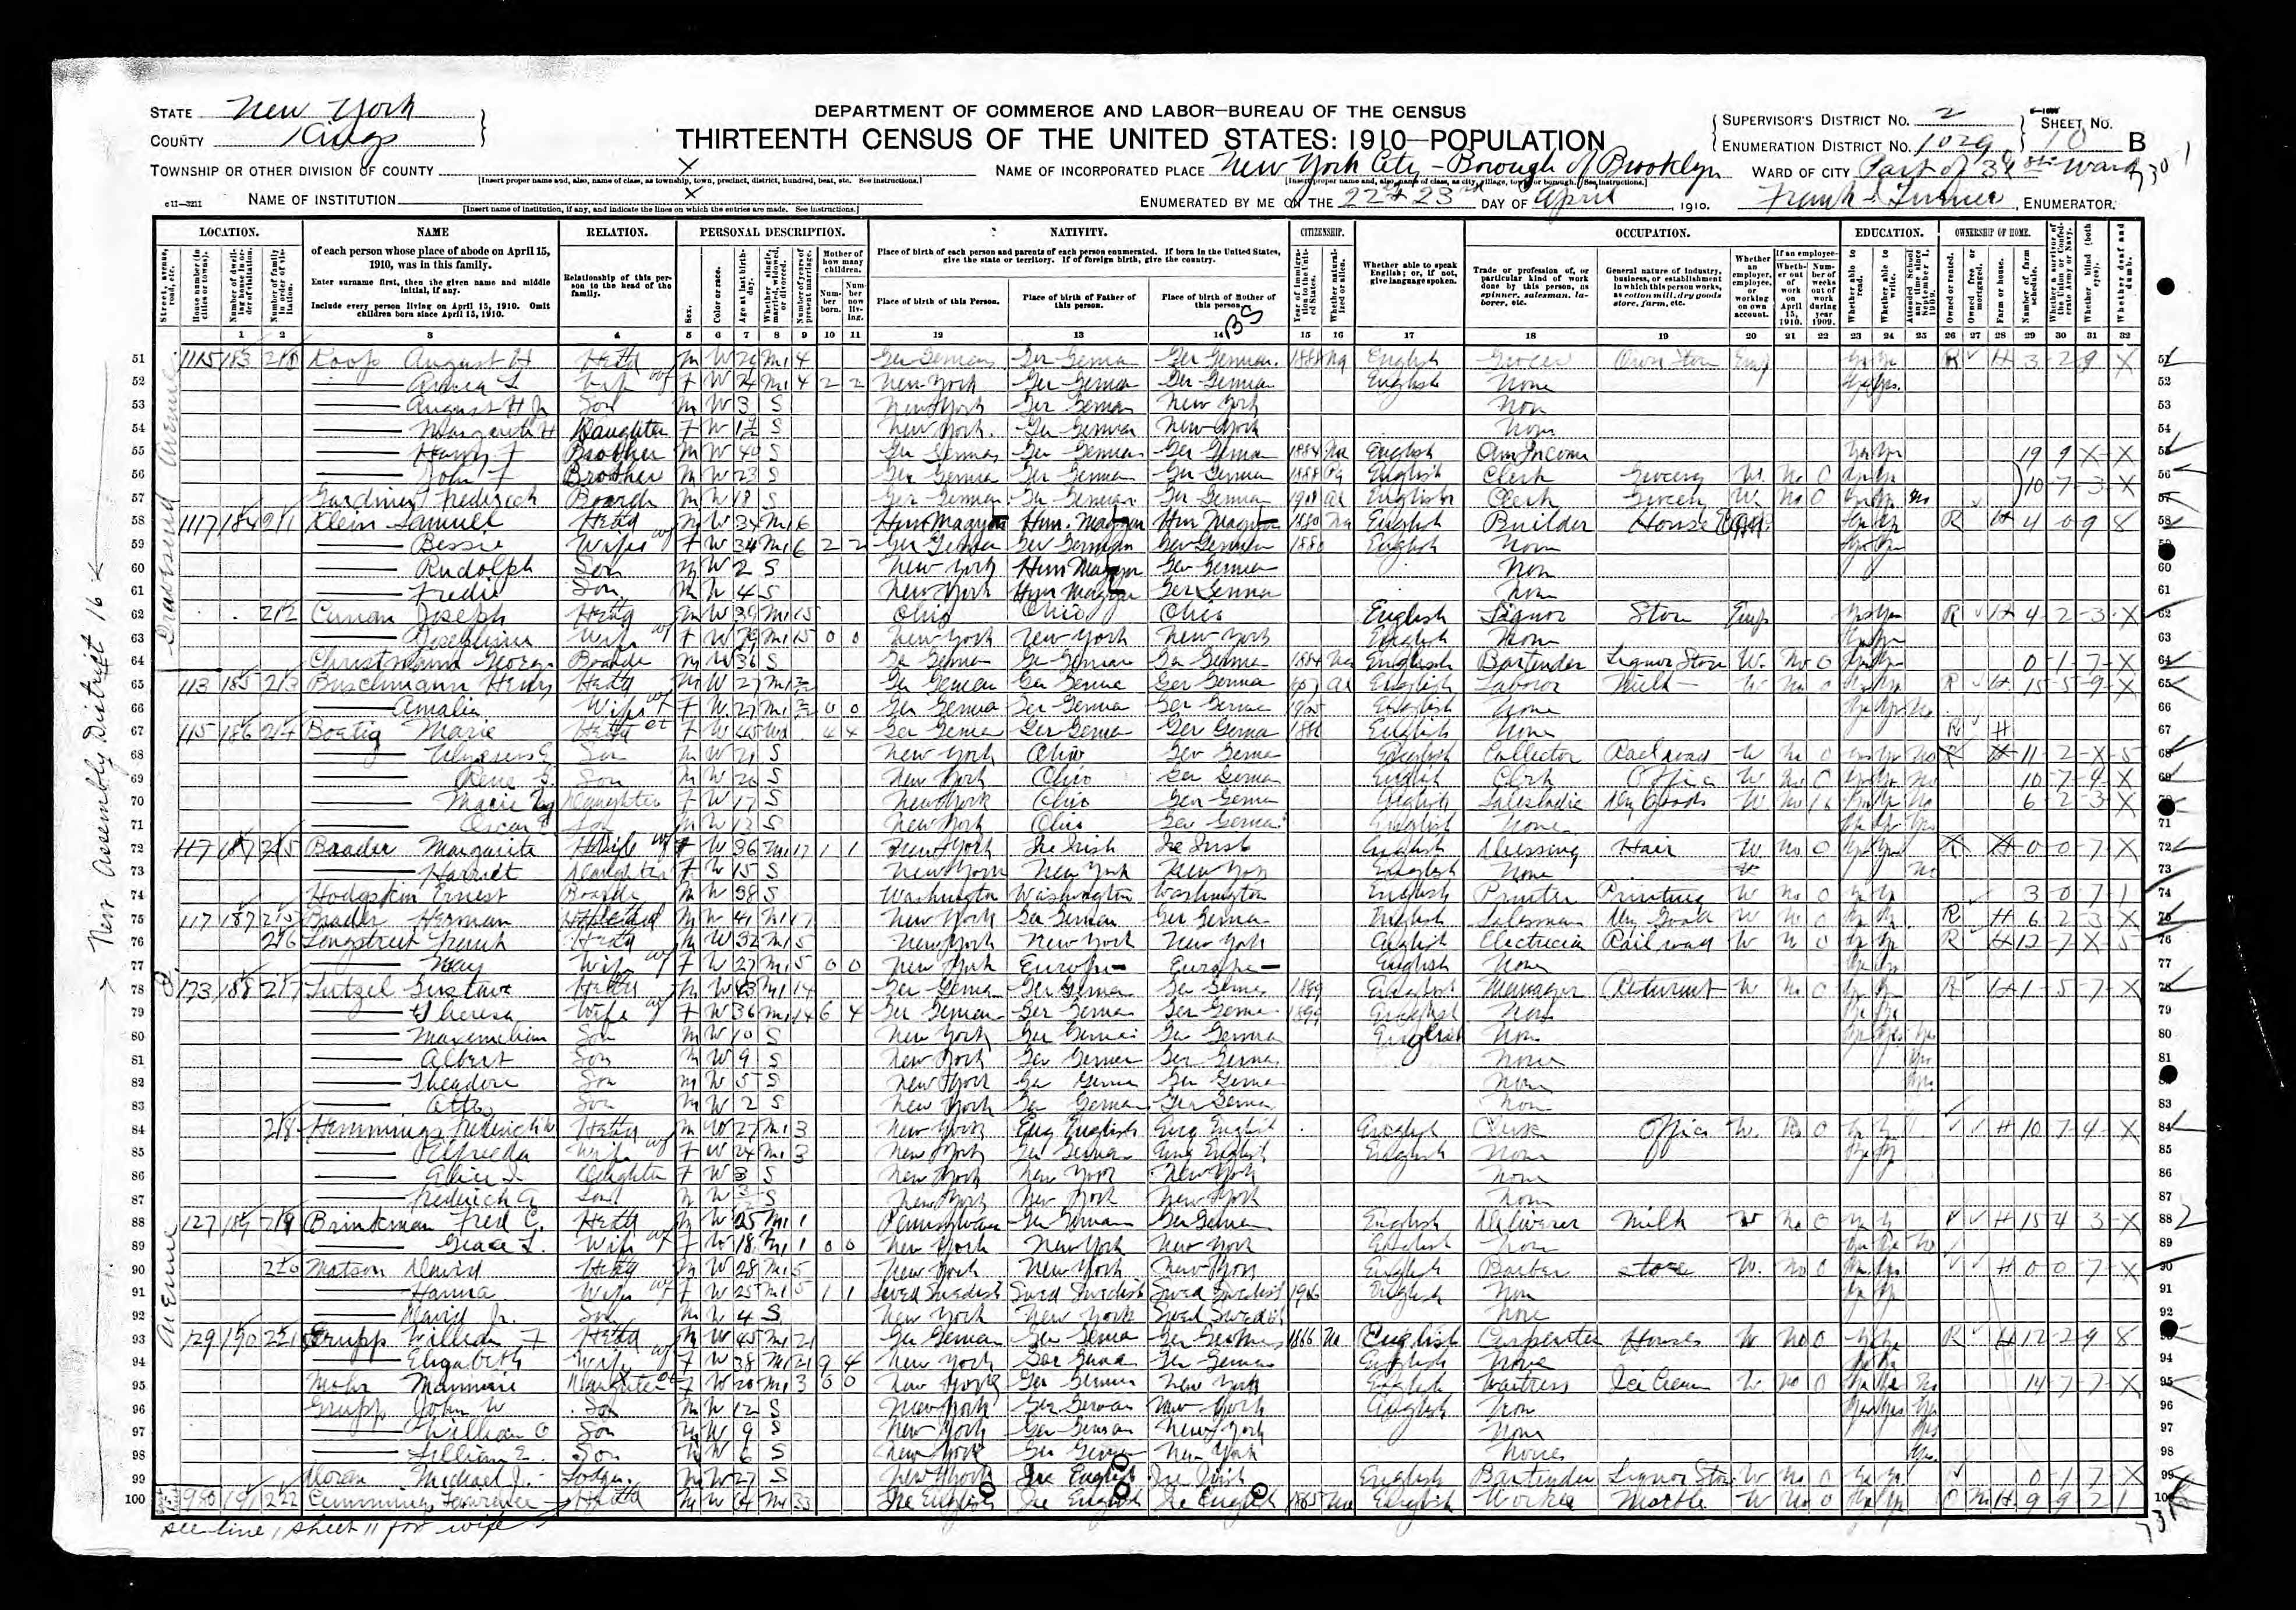 1910 US Census, William Grupp, line 97